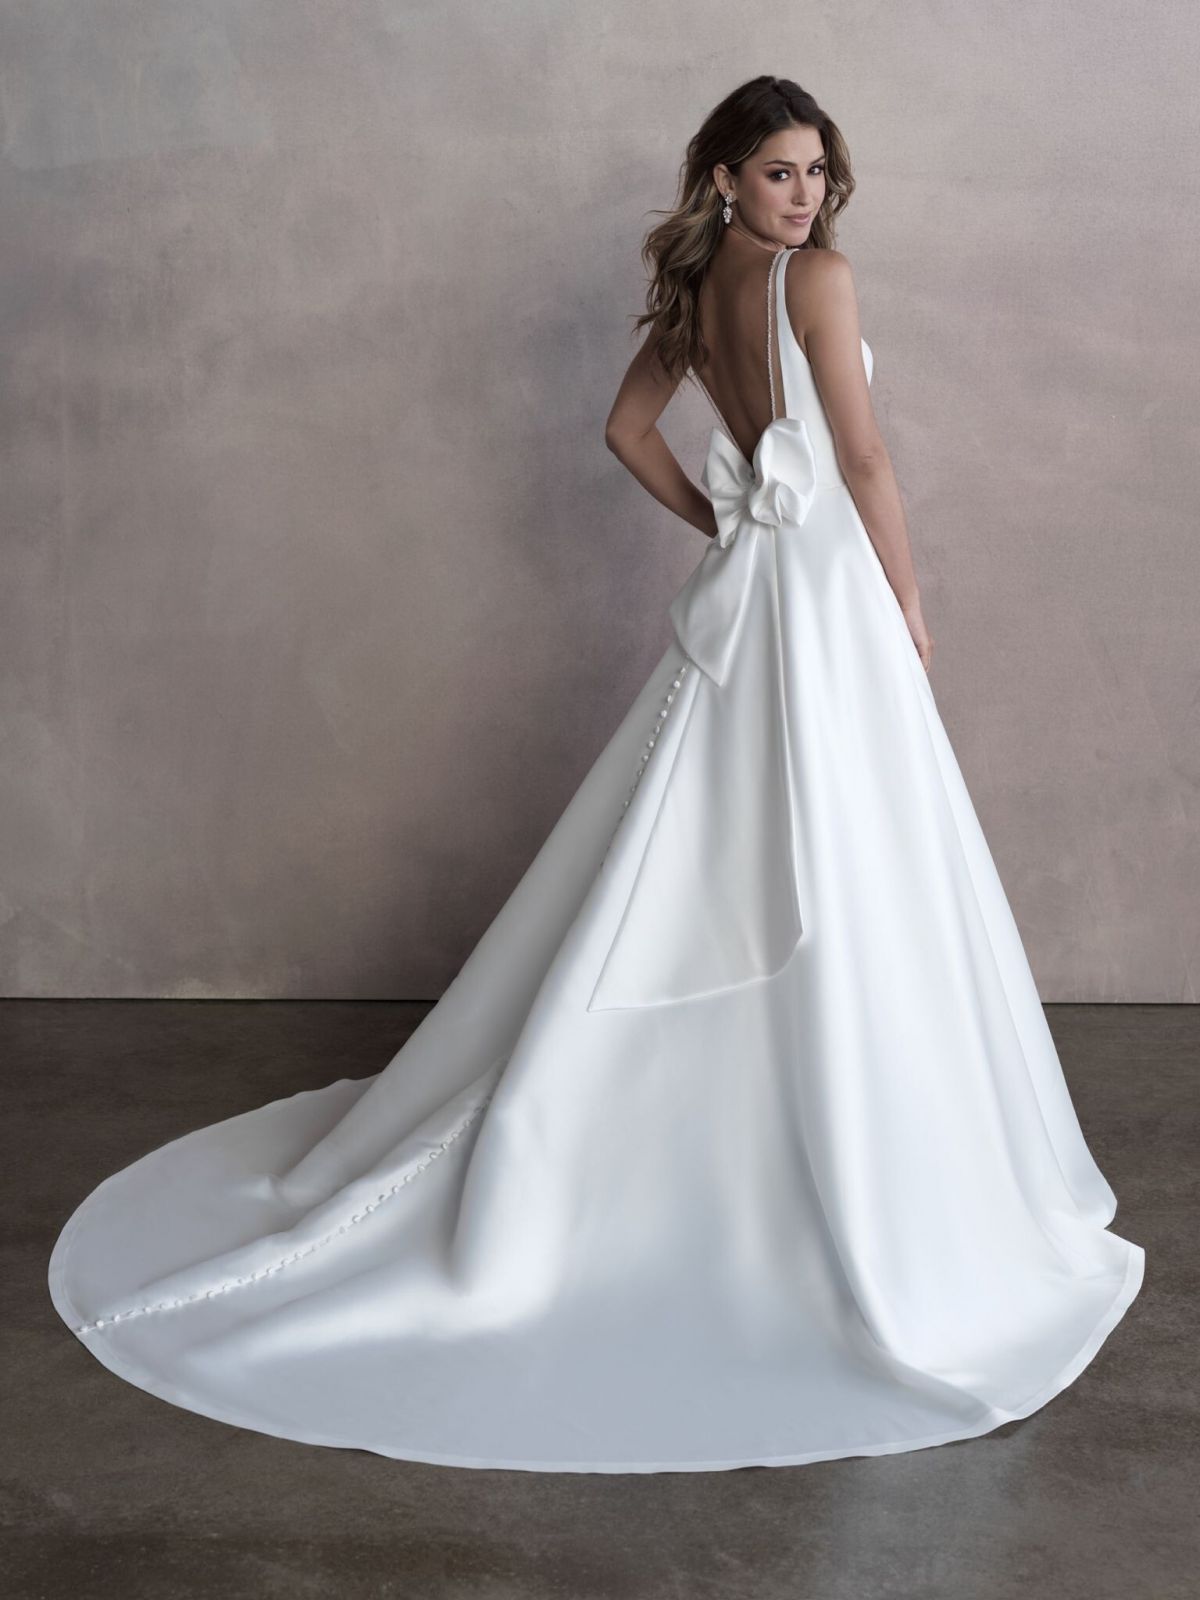 Gigi Paris for Allure Bridals 2020 Collection Photos 16